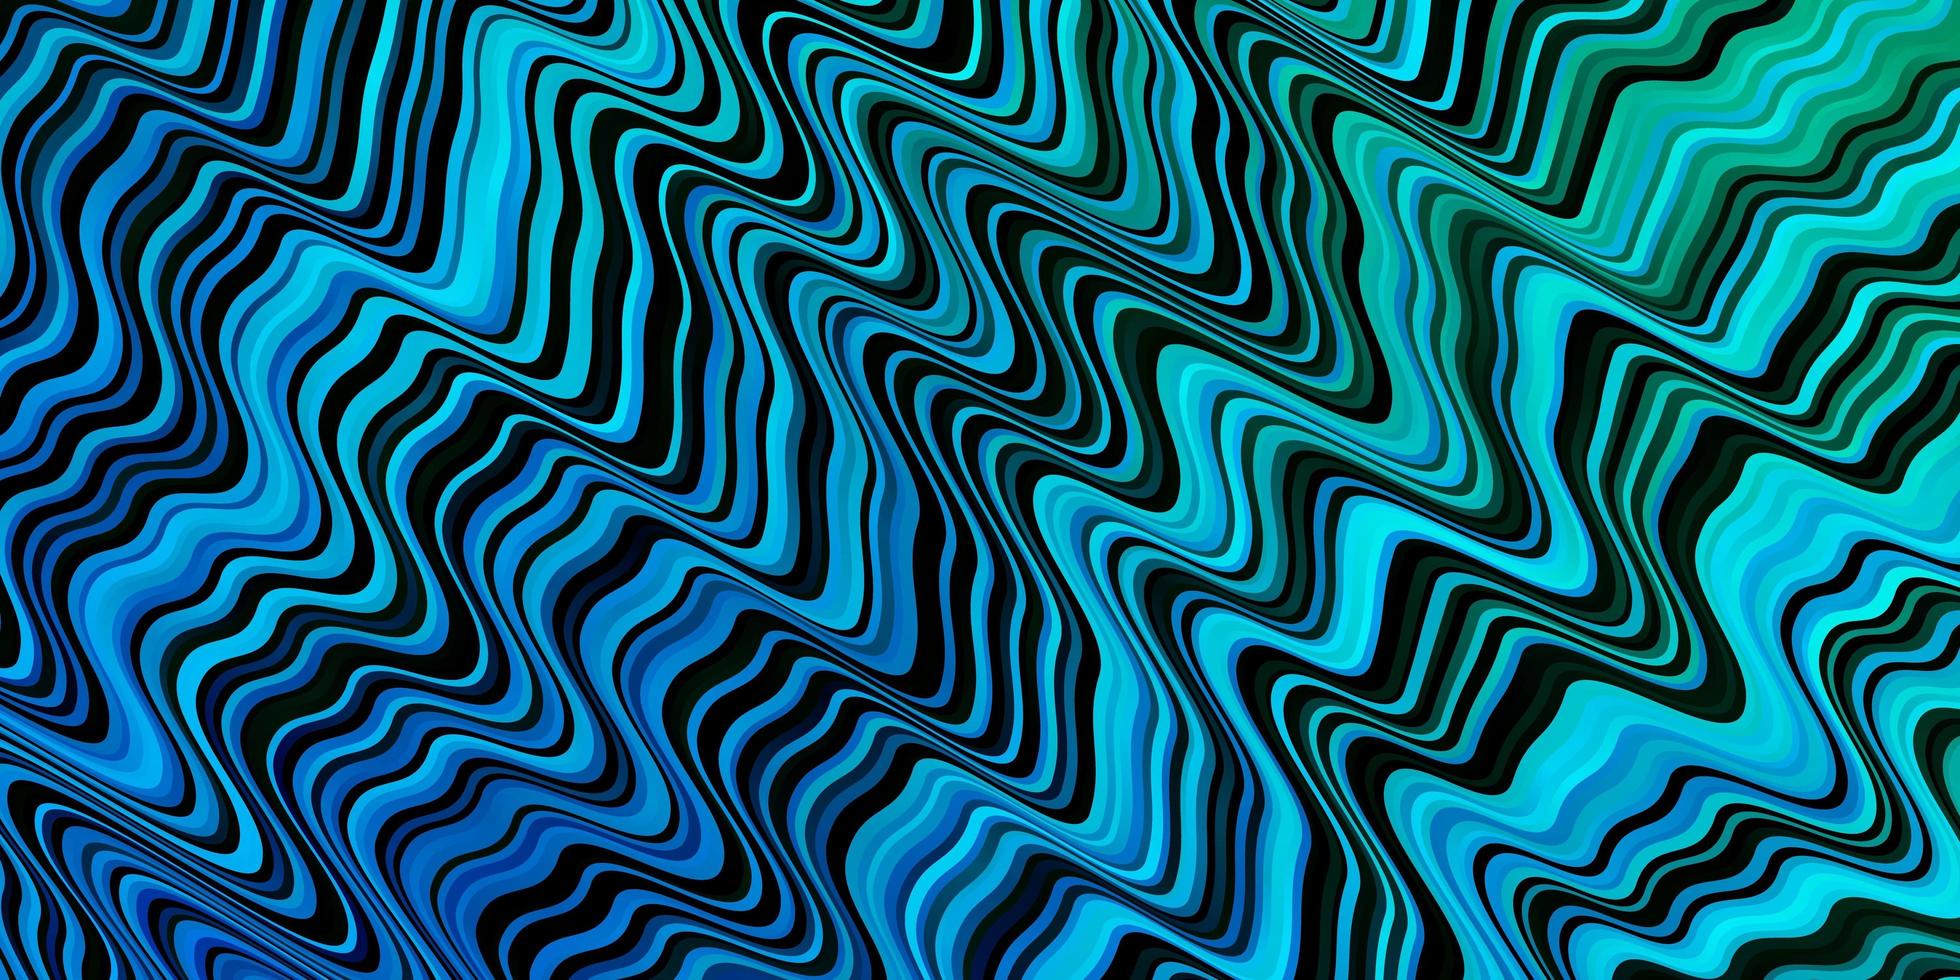 modelo de vetor azul escuro com curvas. ilustração abstrata de gradiente com linhas irônicas. padrão para livretos, folhetos.